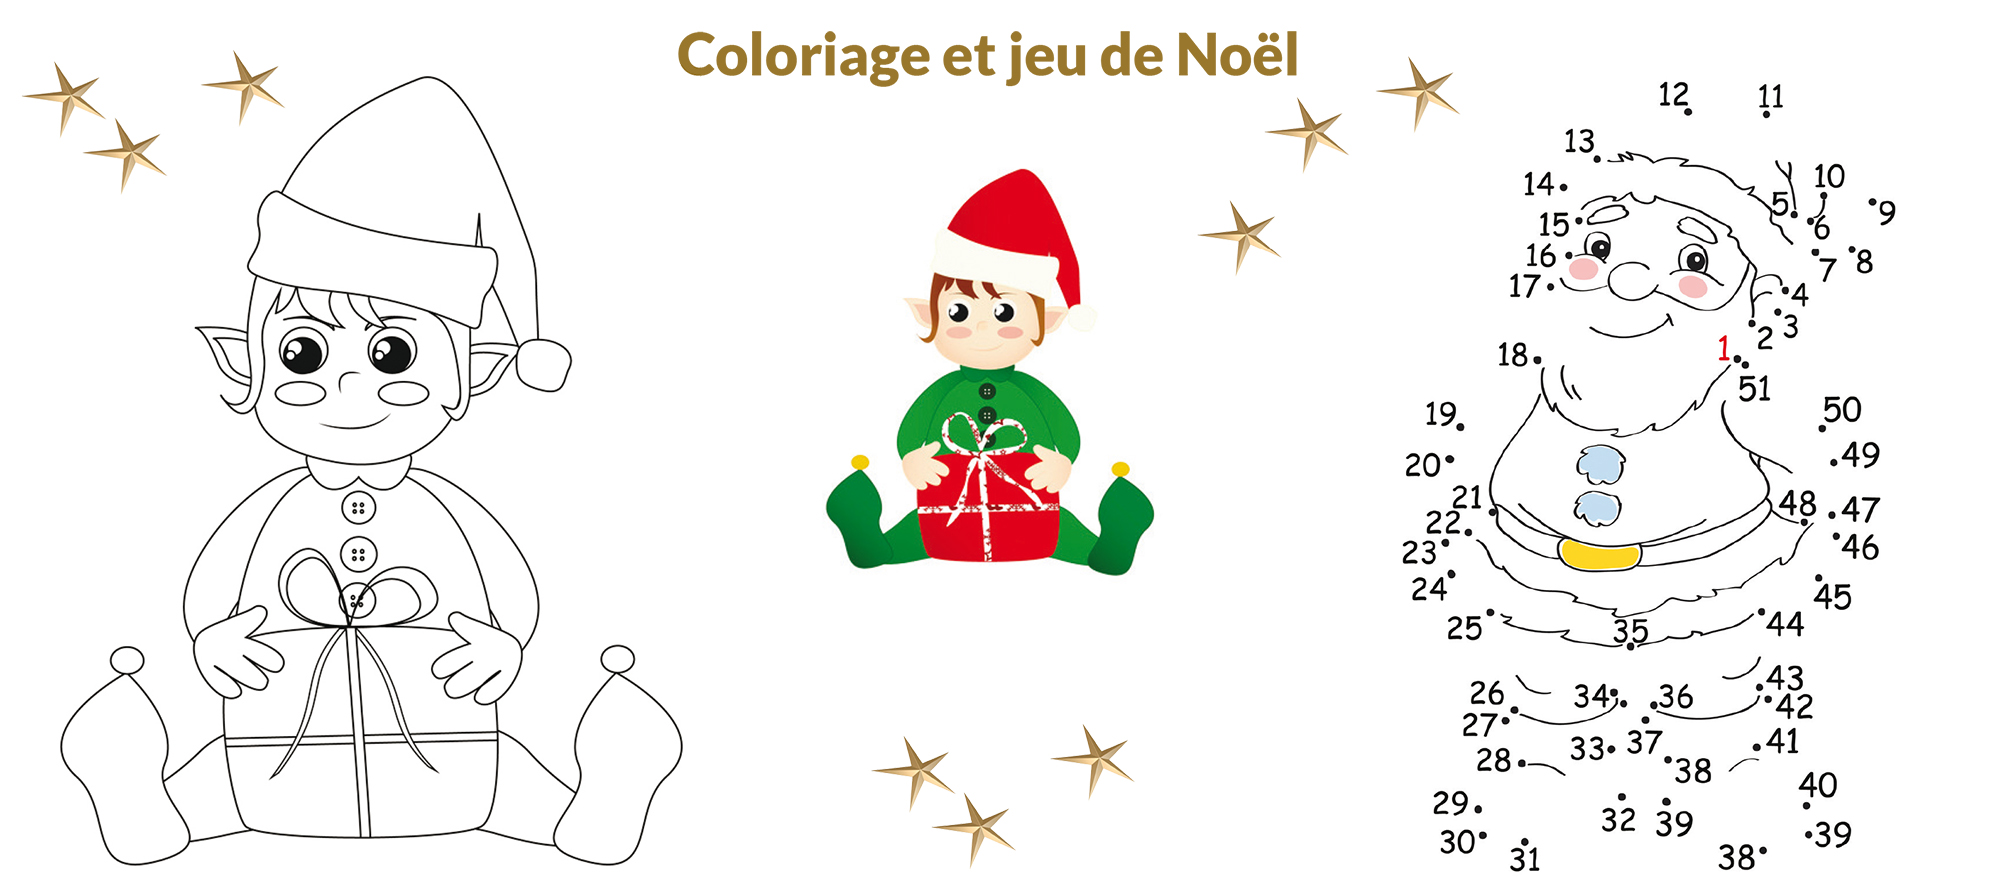 Coloriage et jeu de Noël - Ballad et vous